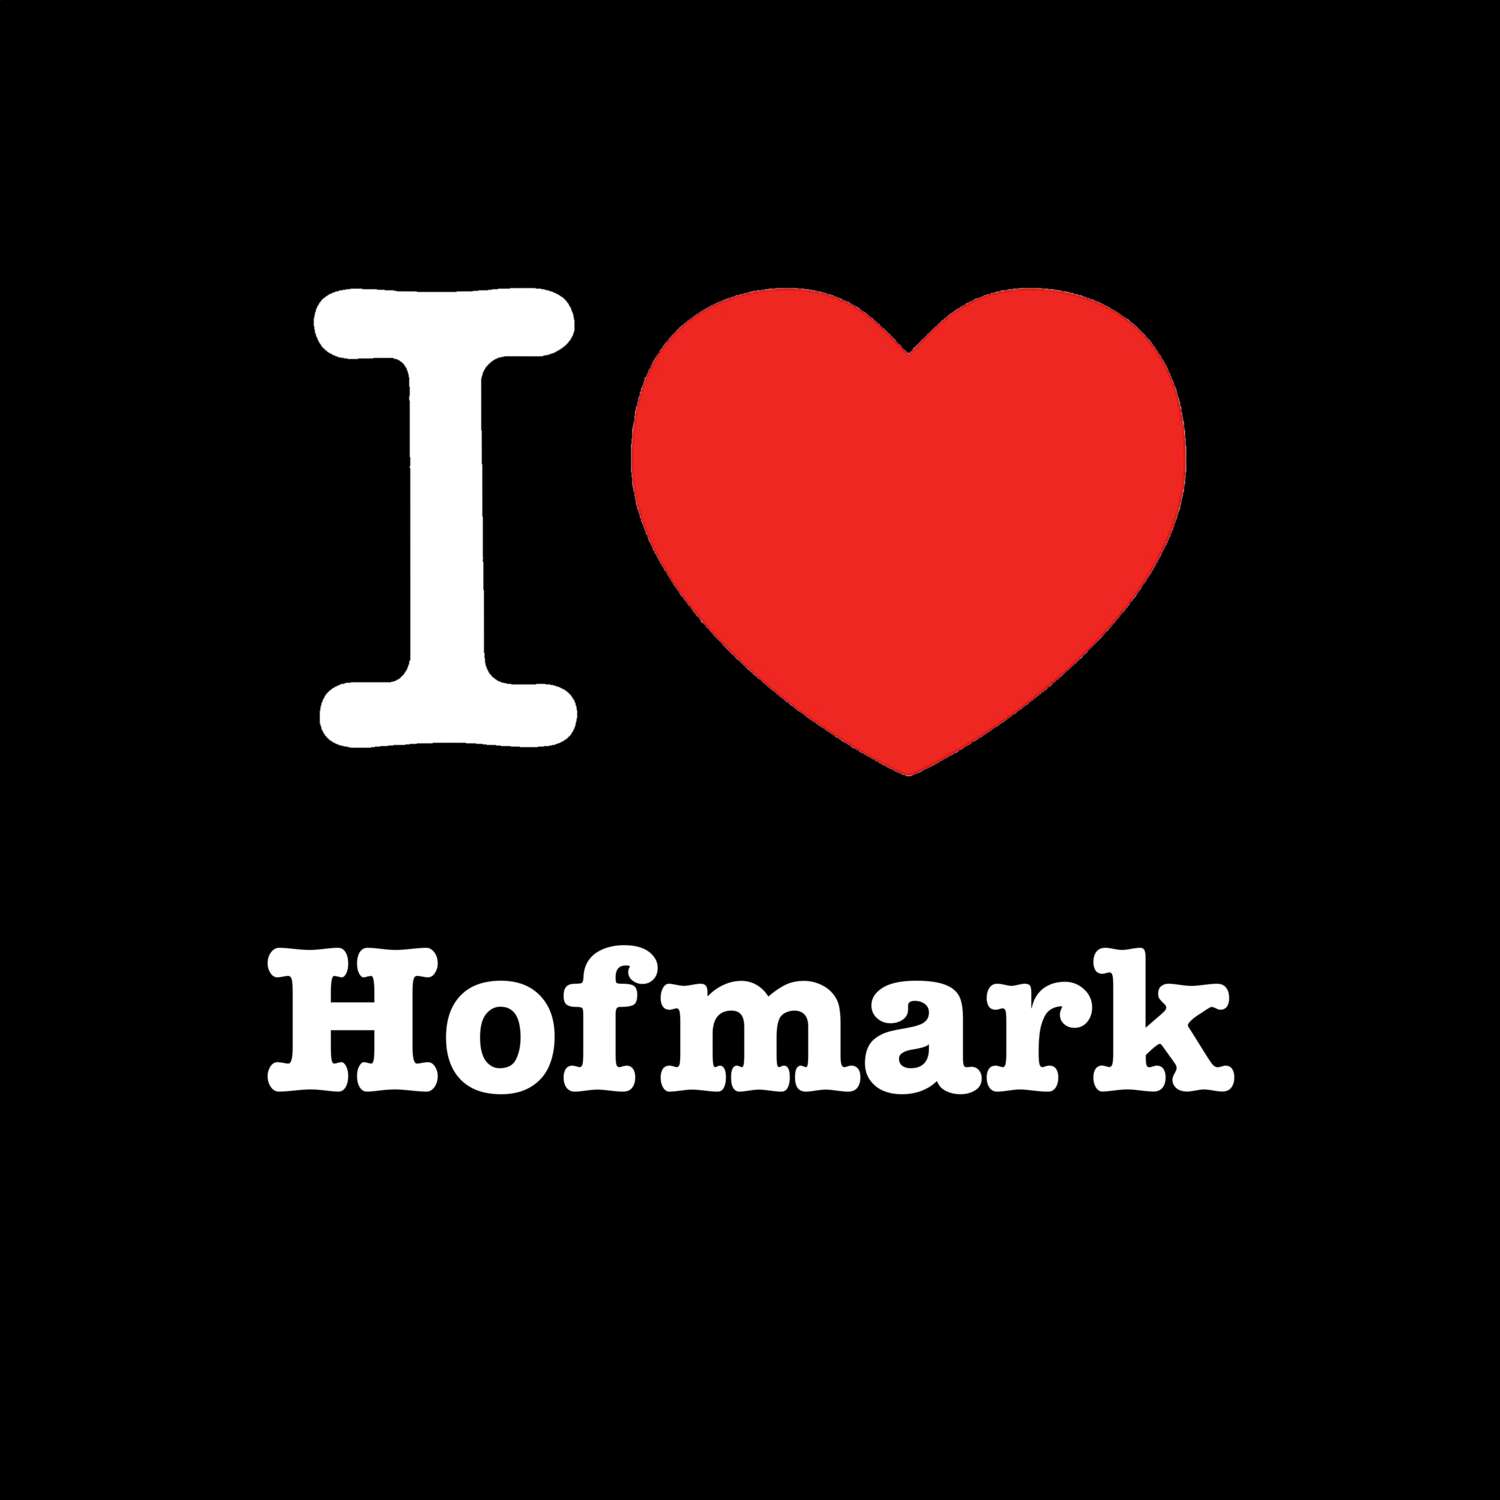 Hofmark T-Shirt »I love«